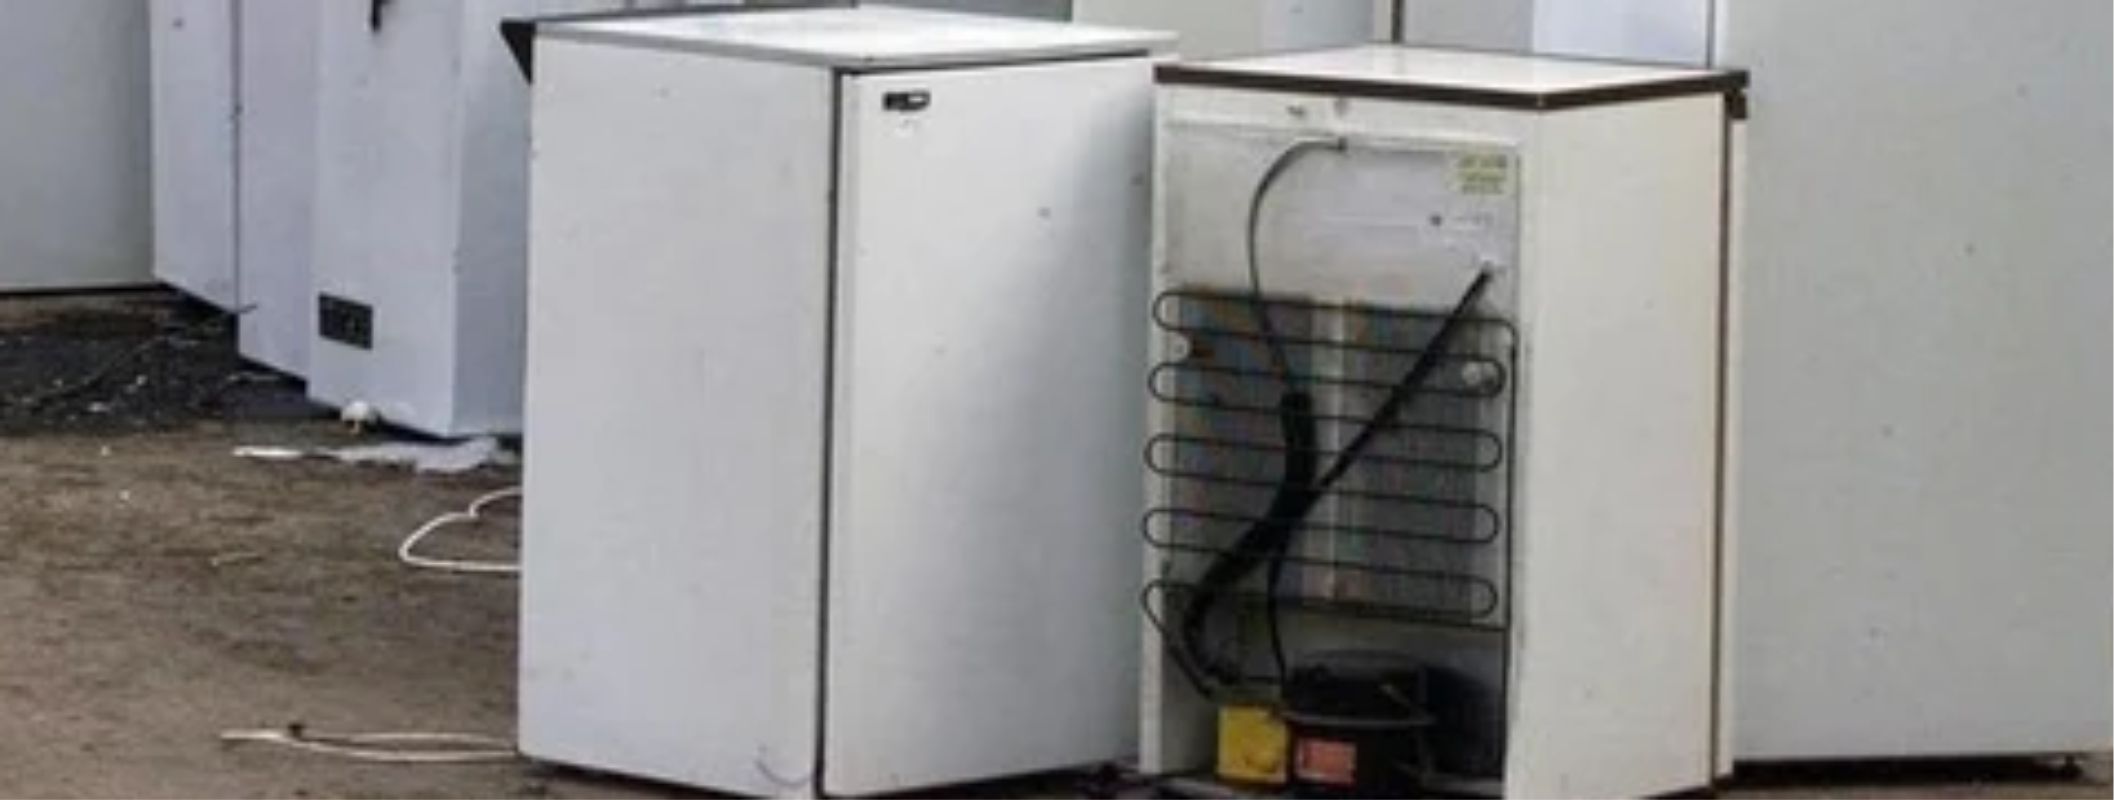 used-scrap-air-conditioner-and-refridgerator-buyer-in-lagos